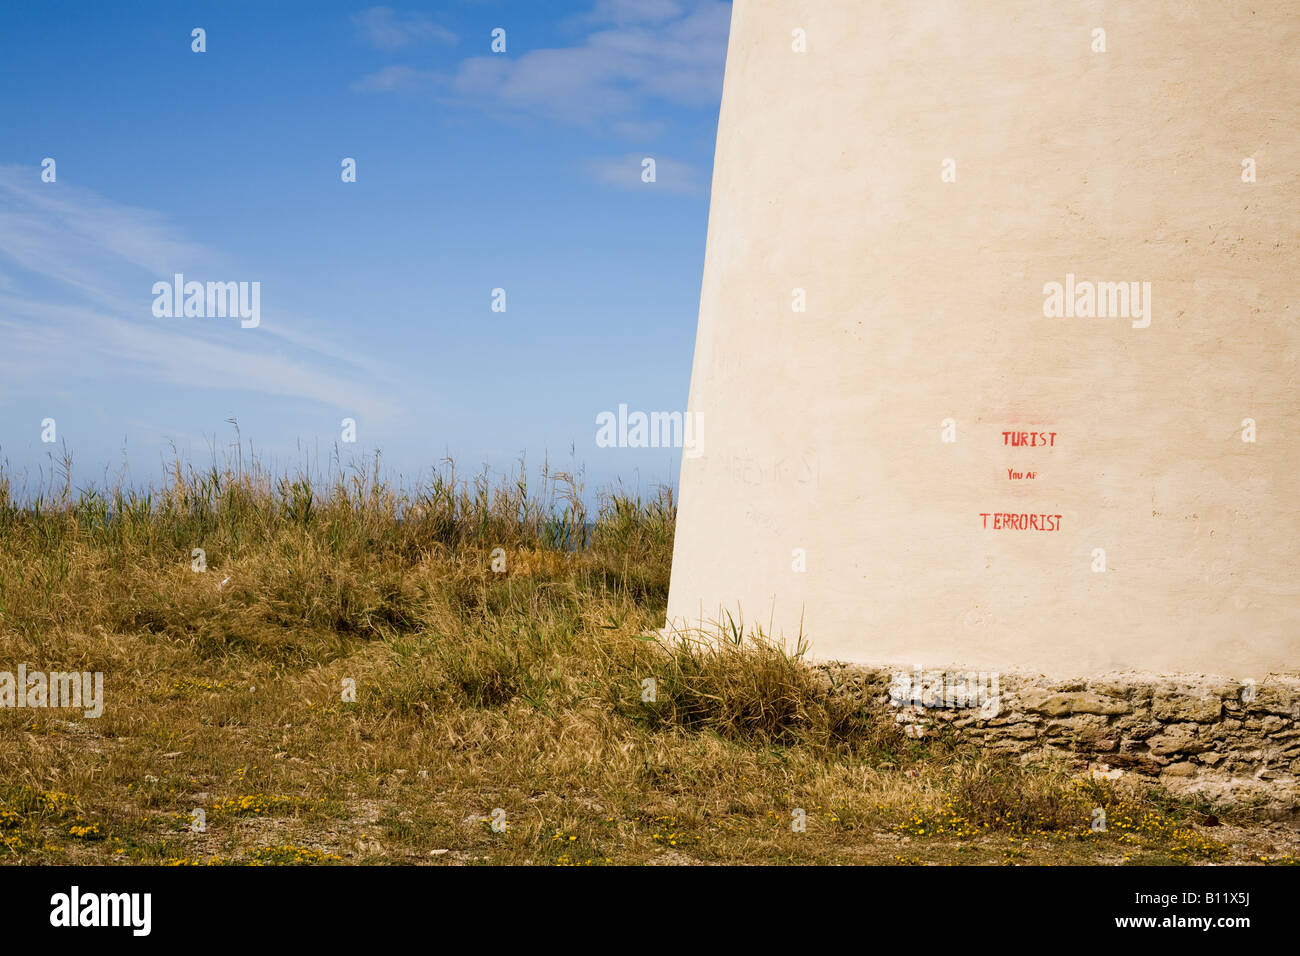 Graffiti auf dem Torre Nueve - der Neue Turm - ein alter Aussichtsturm und Verteidigungsturm am Ufer von El Palmar lautet "TURIST YOU AR TERRORIST". Playa de El Palmar, El Palmar, Vejer de la Frontera, Cádiz, Andalucía, Spanien. Stockfoto